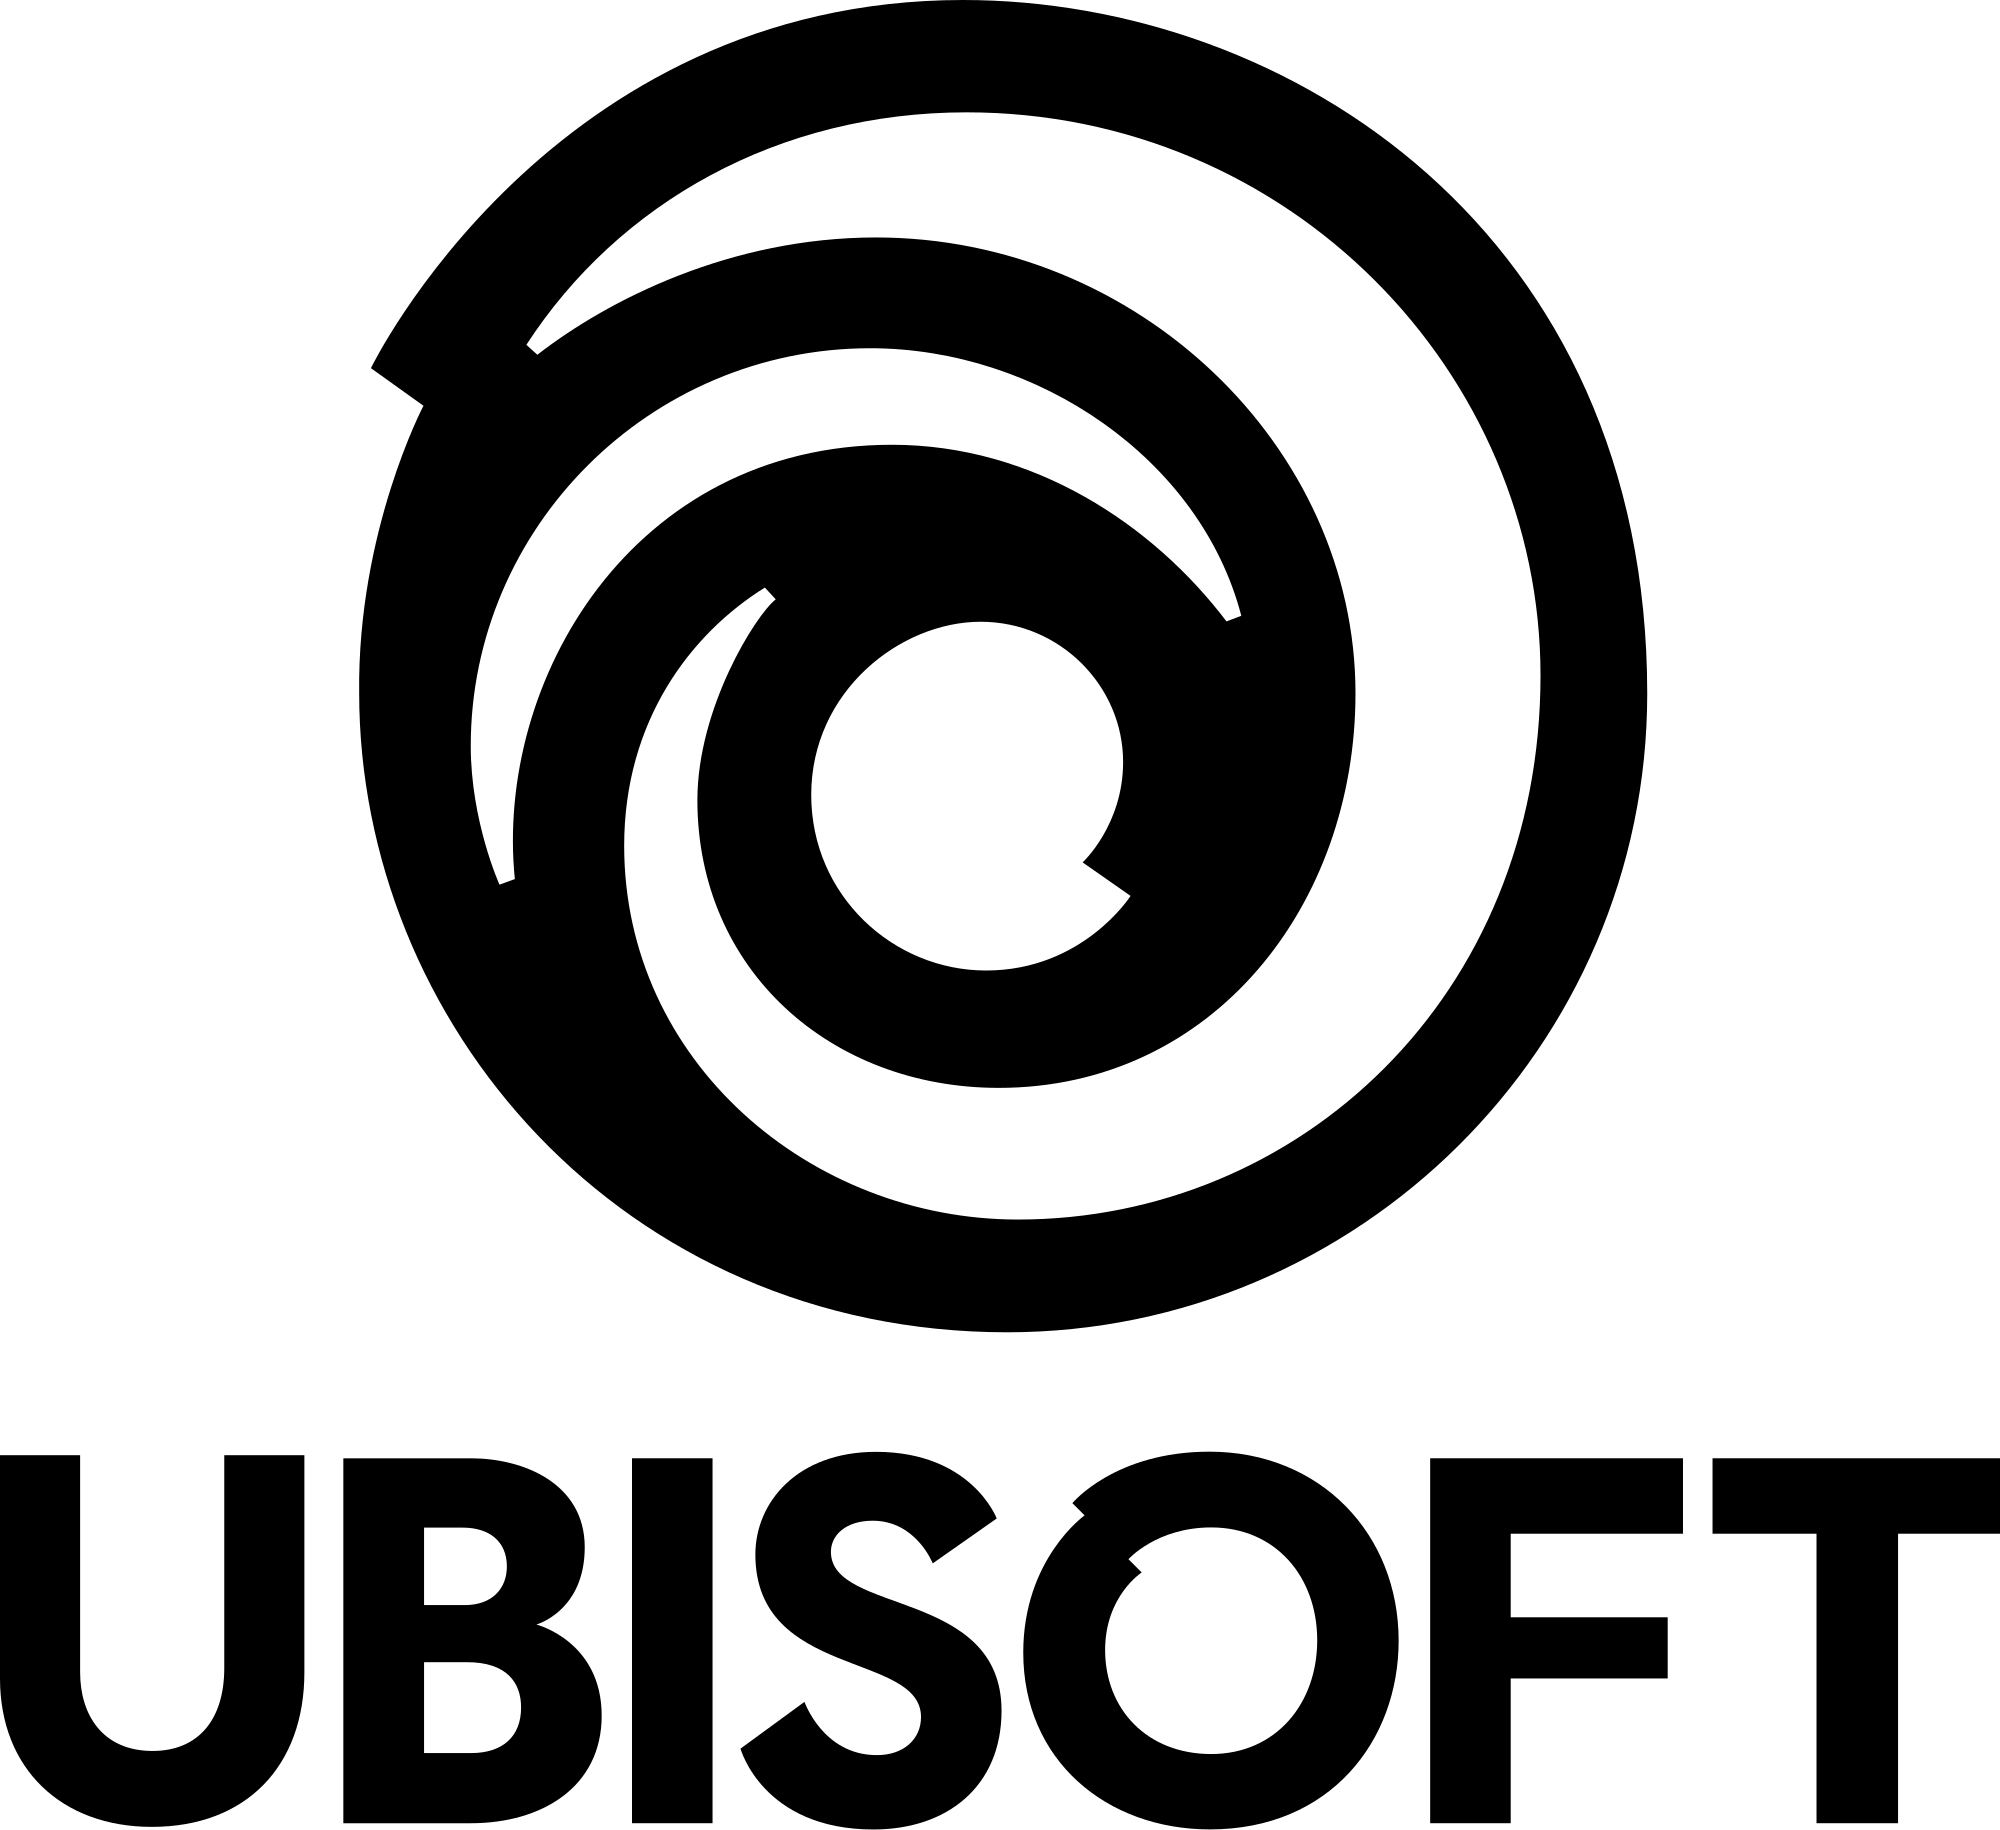 Ubisoft Logo - File:Ubisoft logo.svg - Wikimedia Commons